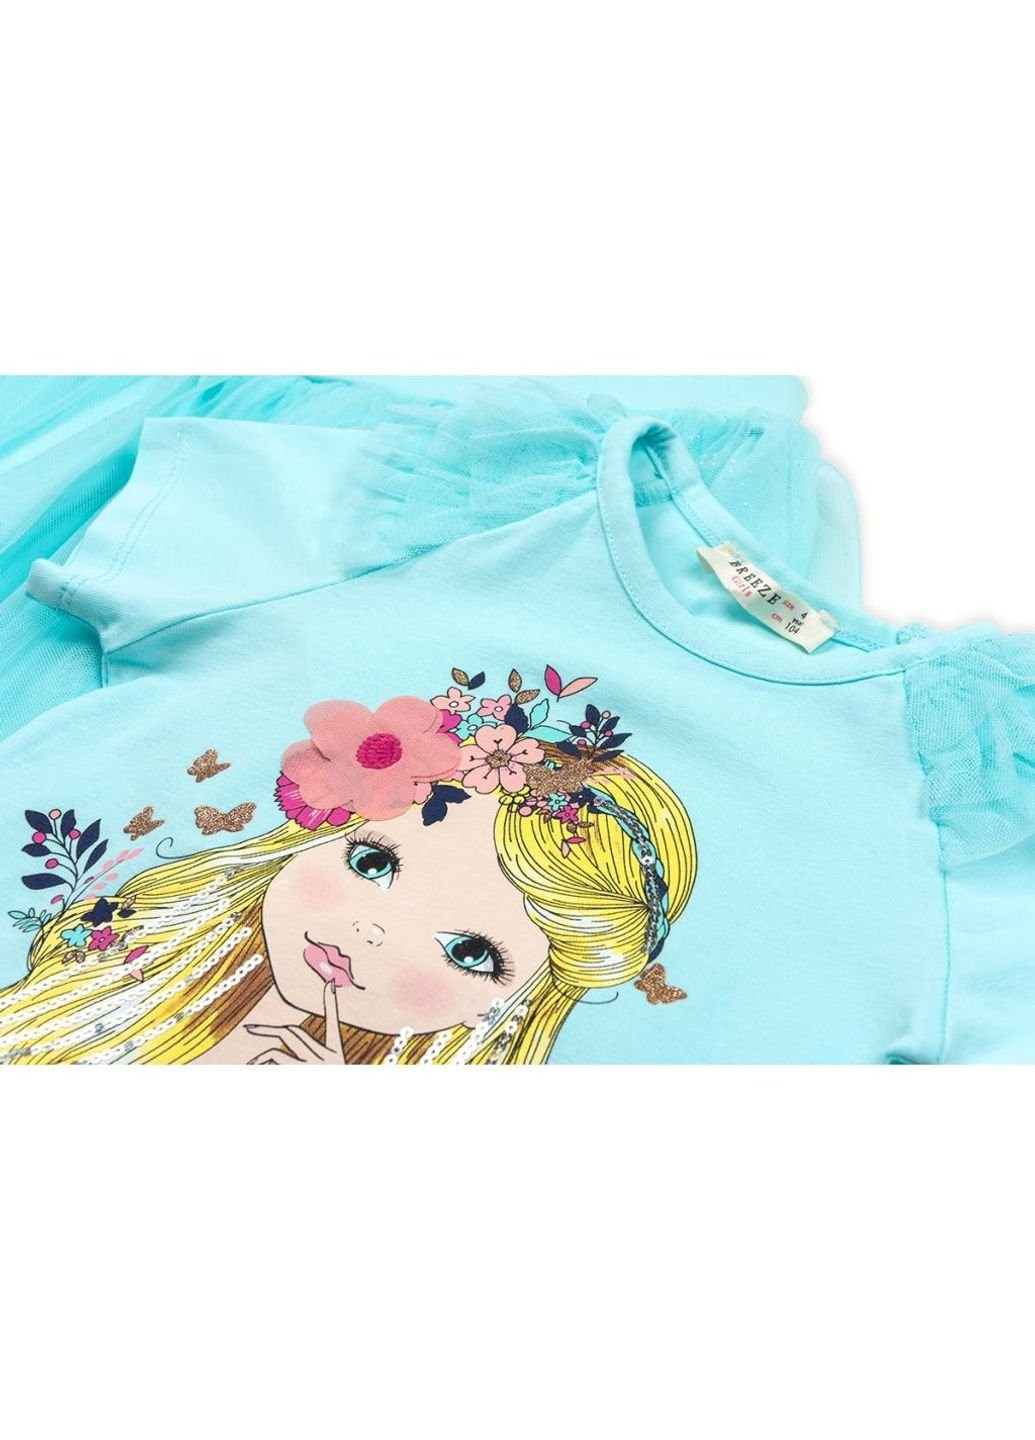 Бирюзовый летний набор детской одежды с девочкой и фатиновой юбкой (11826-104g-blue) Breeze